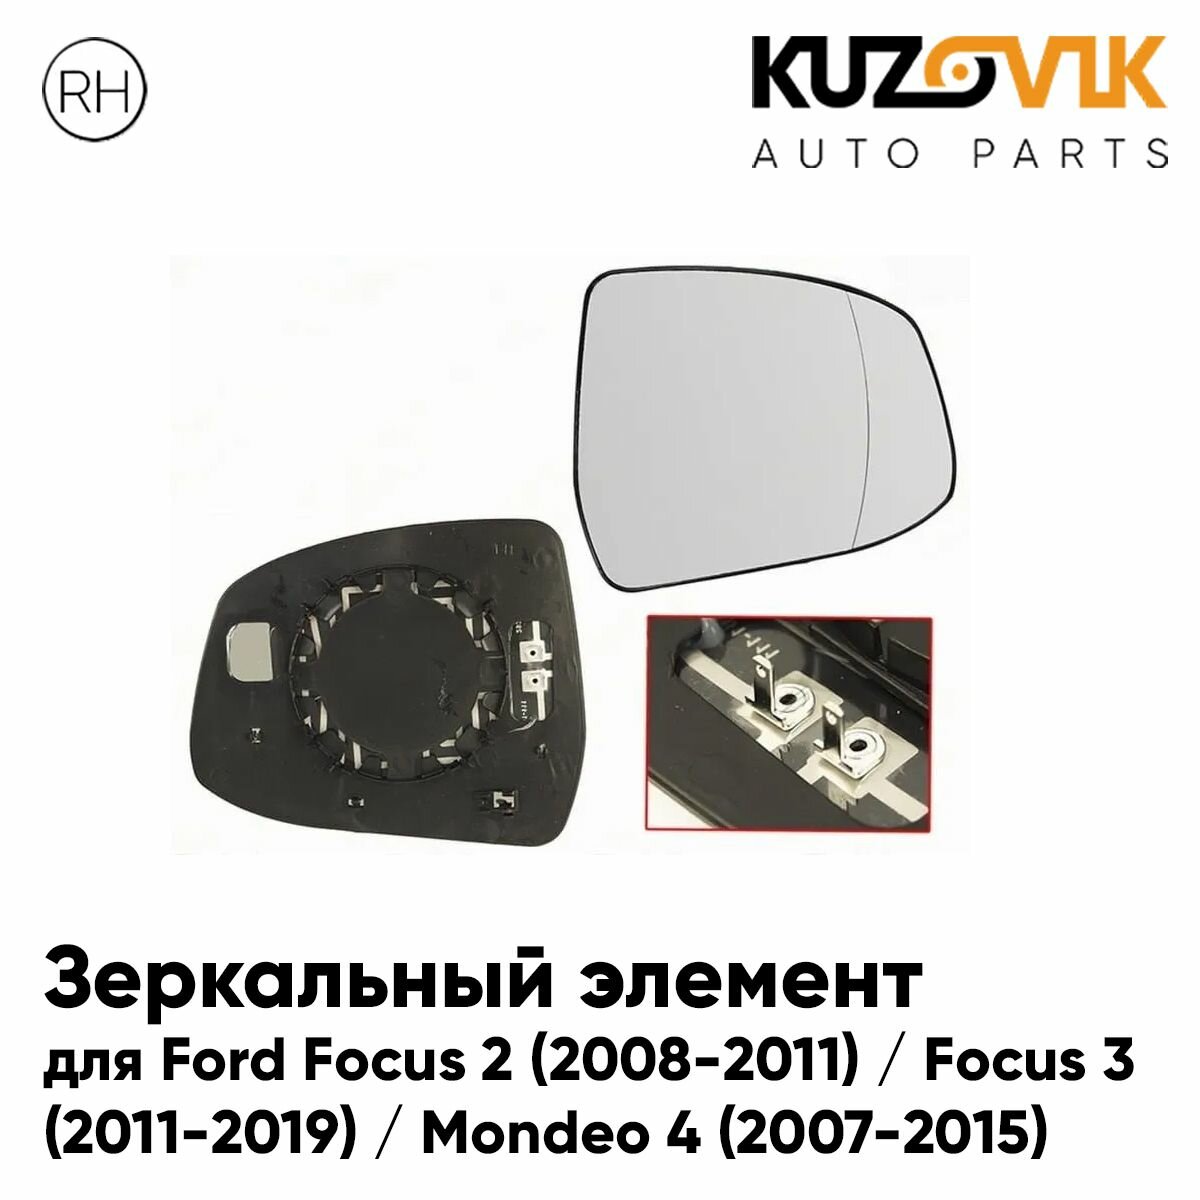 Зеркальный элемент для Форд Фокус Ford Focus 2 (2008-2011) / Focus 3 (2011-2019) / Мондео Mondeo 4 (2007-2015) асферический с обогревом, правое стекло зеркала